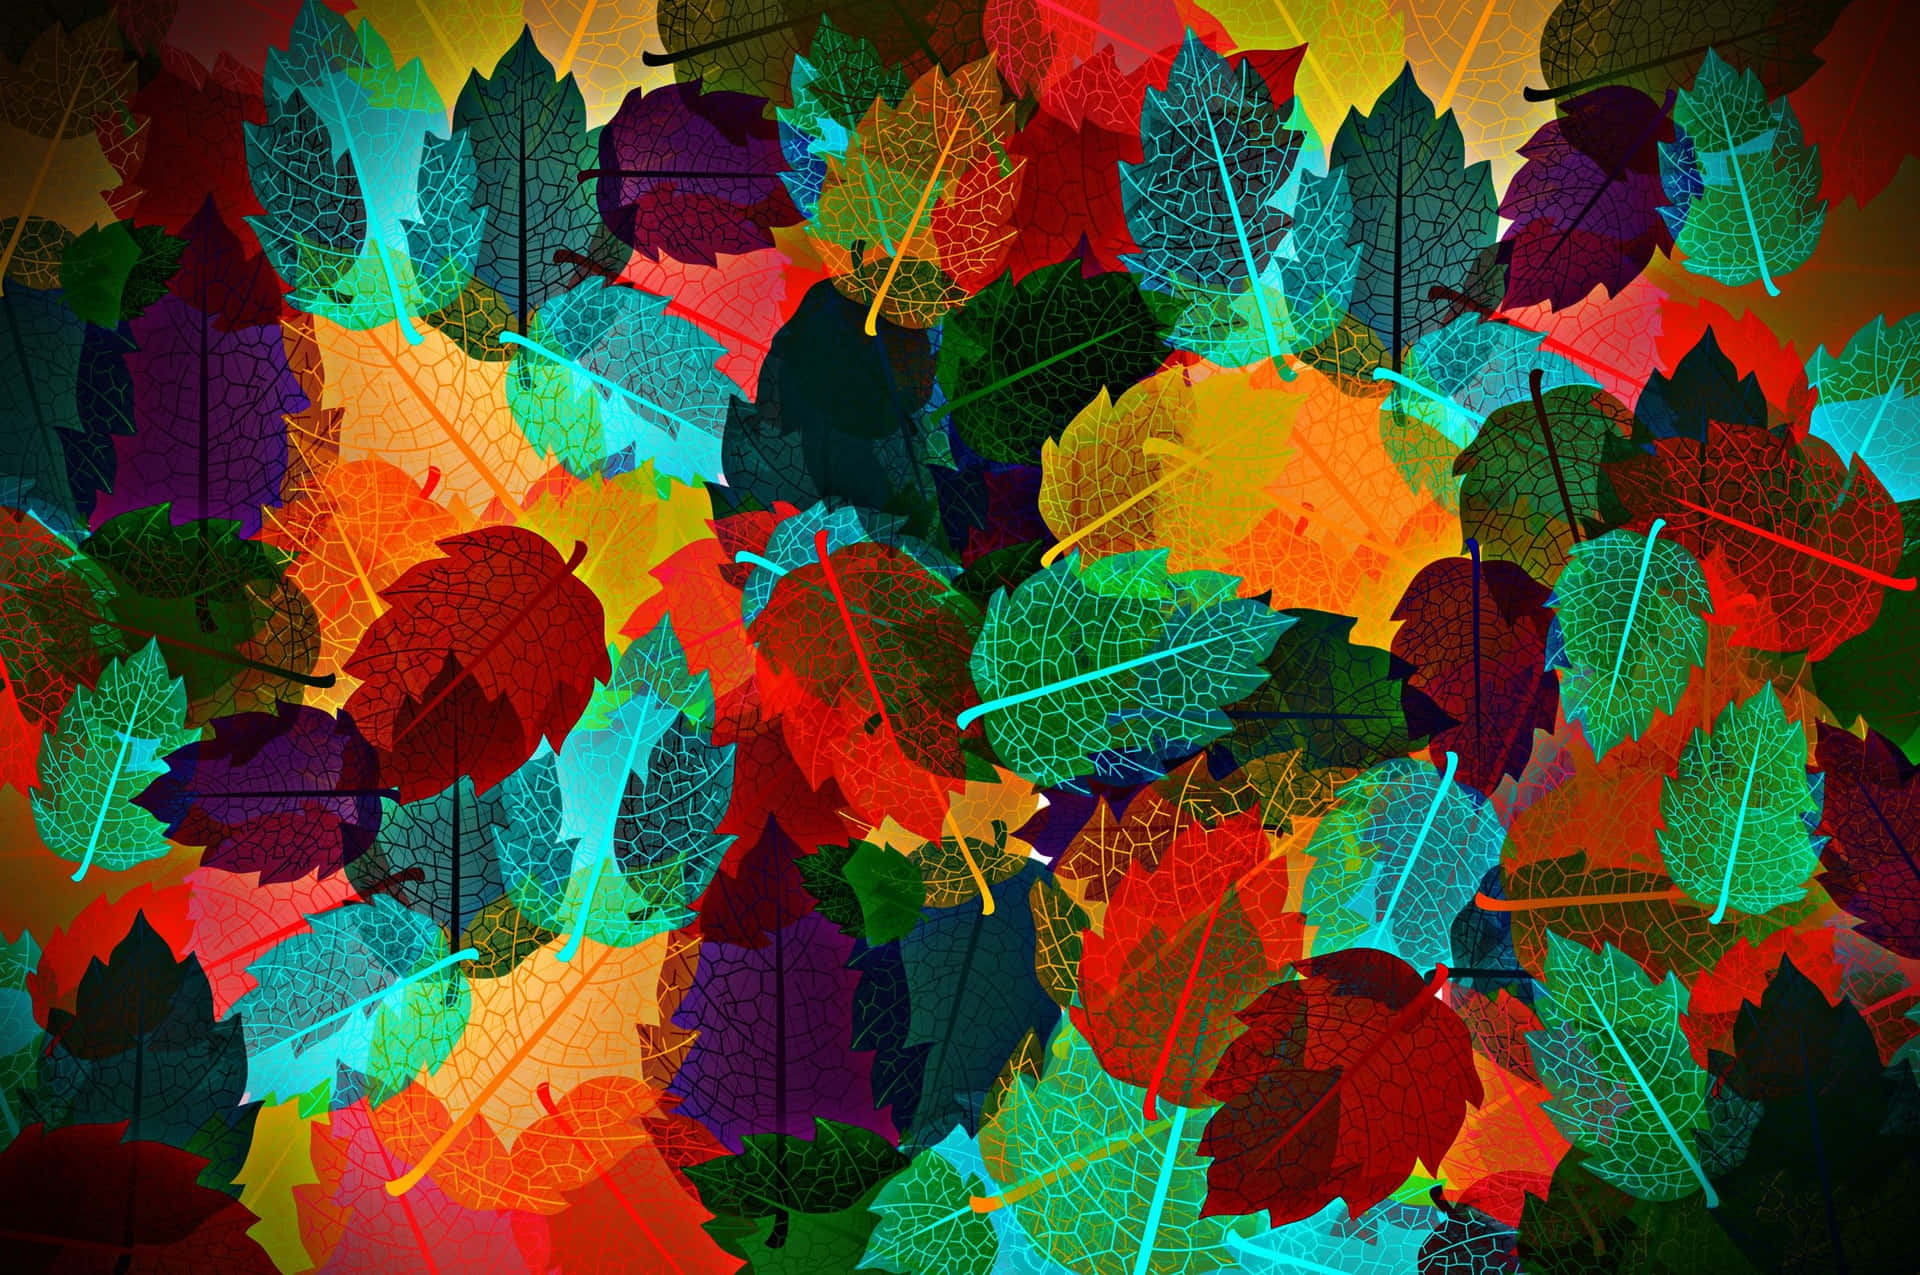 Genomatt Använda En Vacker Höstbild Som Bakgrundsbild På Din Dator Eller Mobiltelefon Kan Du Fira Höstens Skönhet.